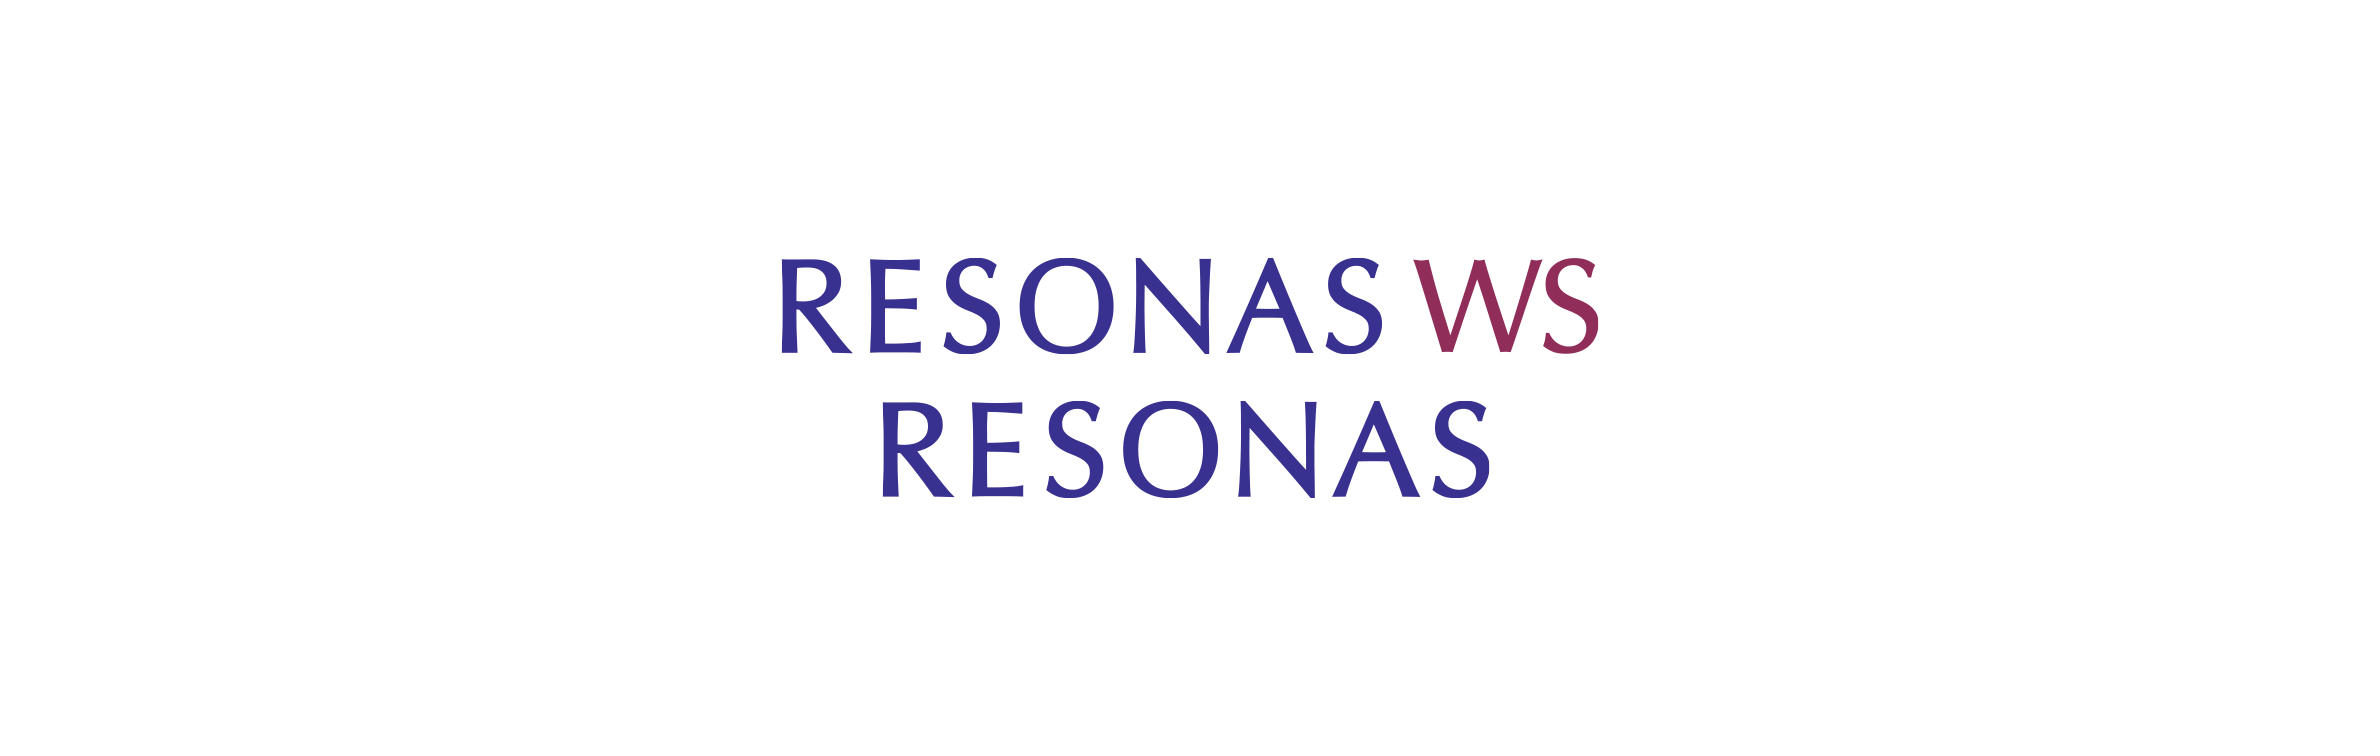 RESONAS WS / RESONAS